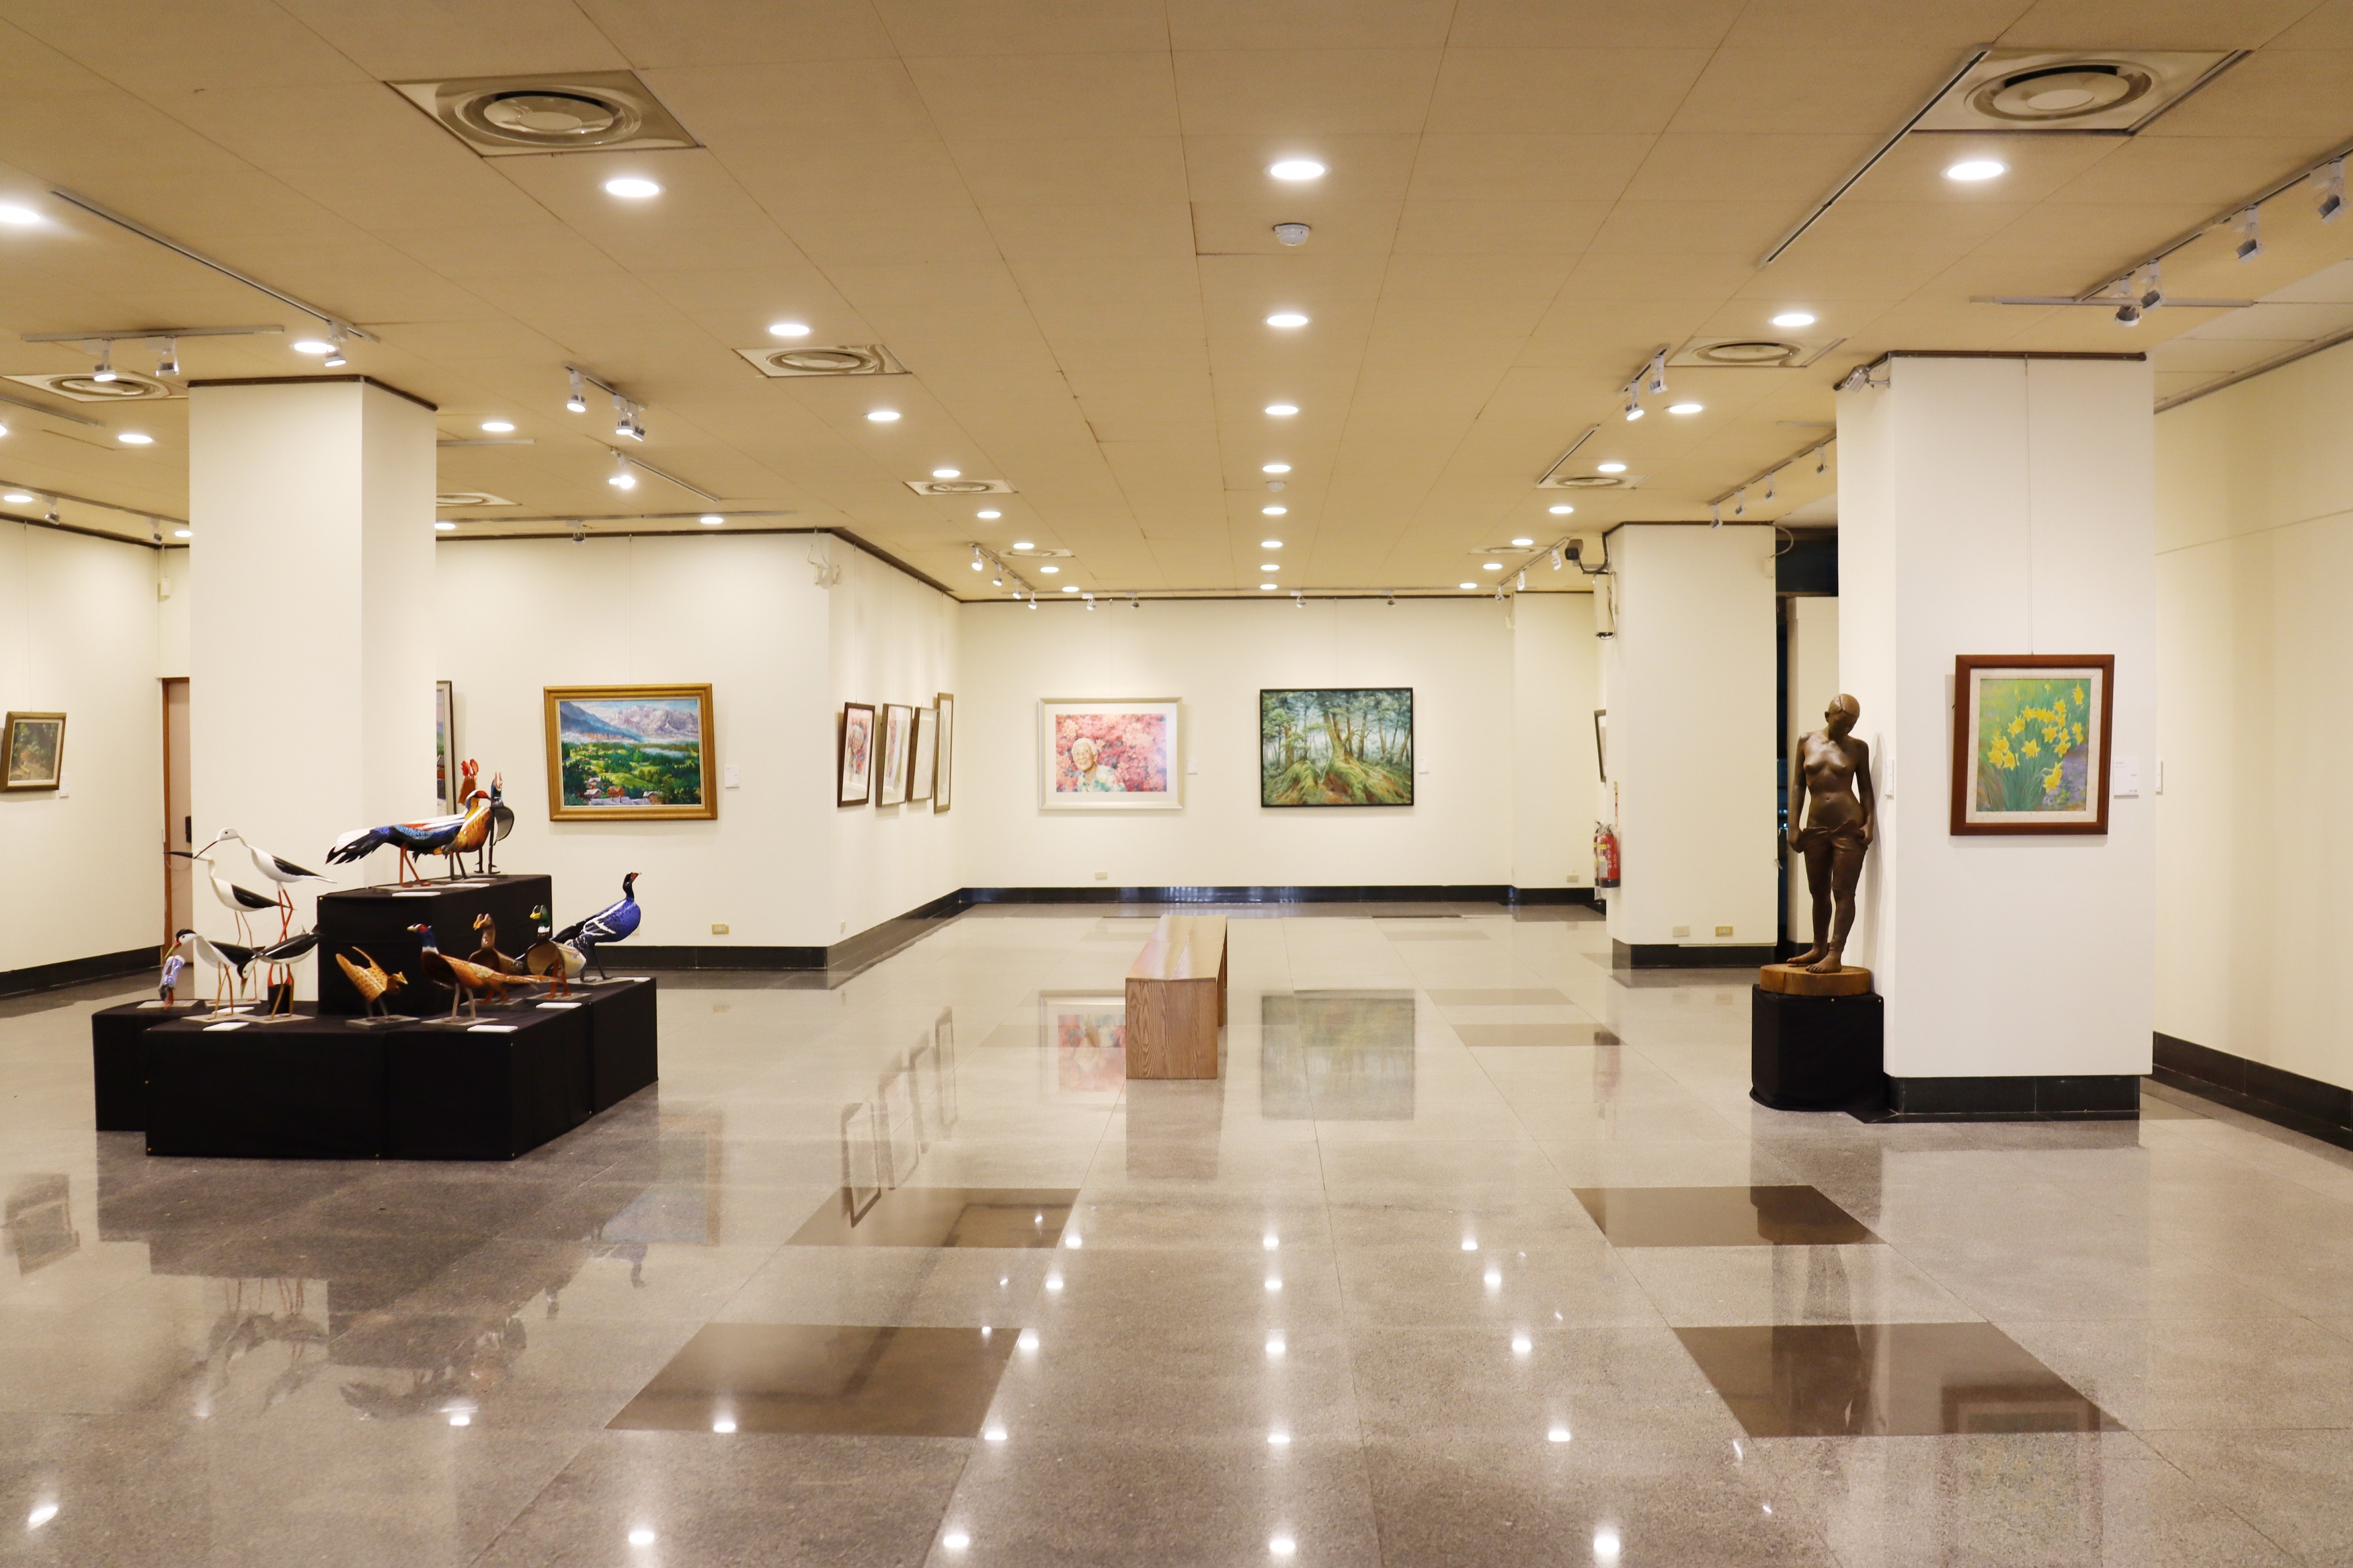 標新立藝-新北市現代藝術協會2020年度會員展之平面繪畫及立體作品